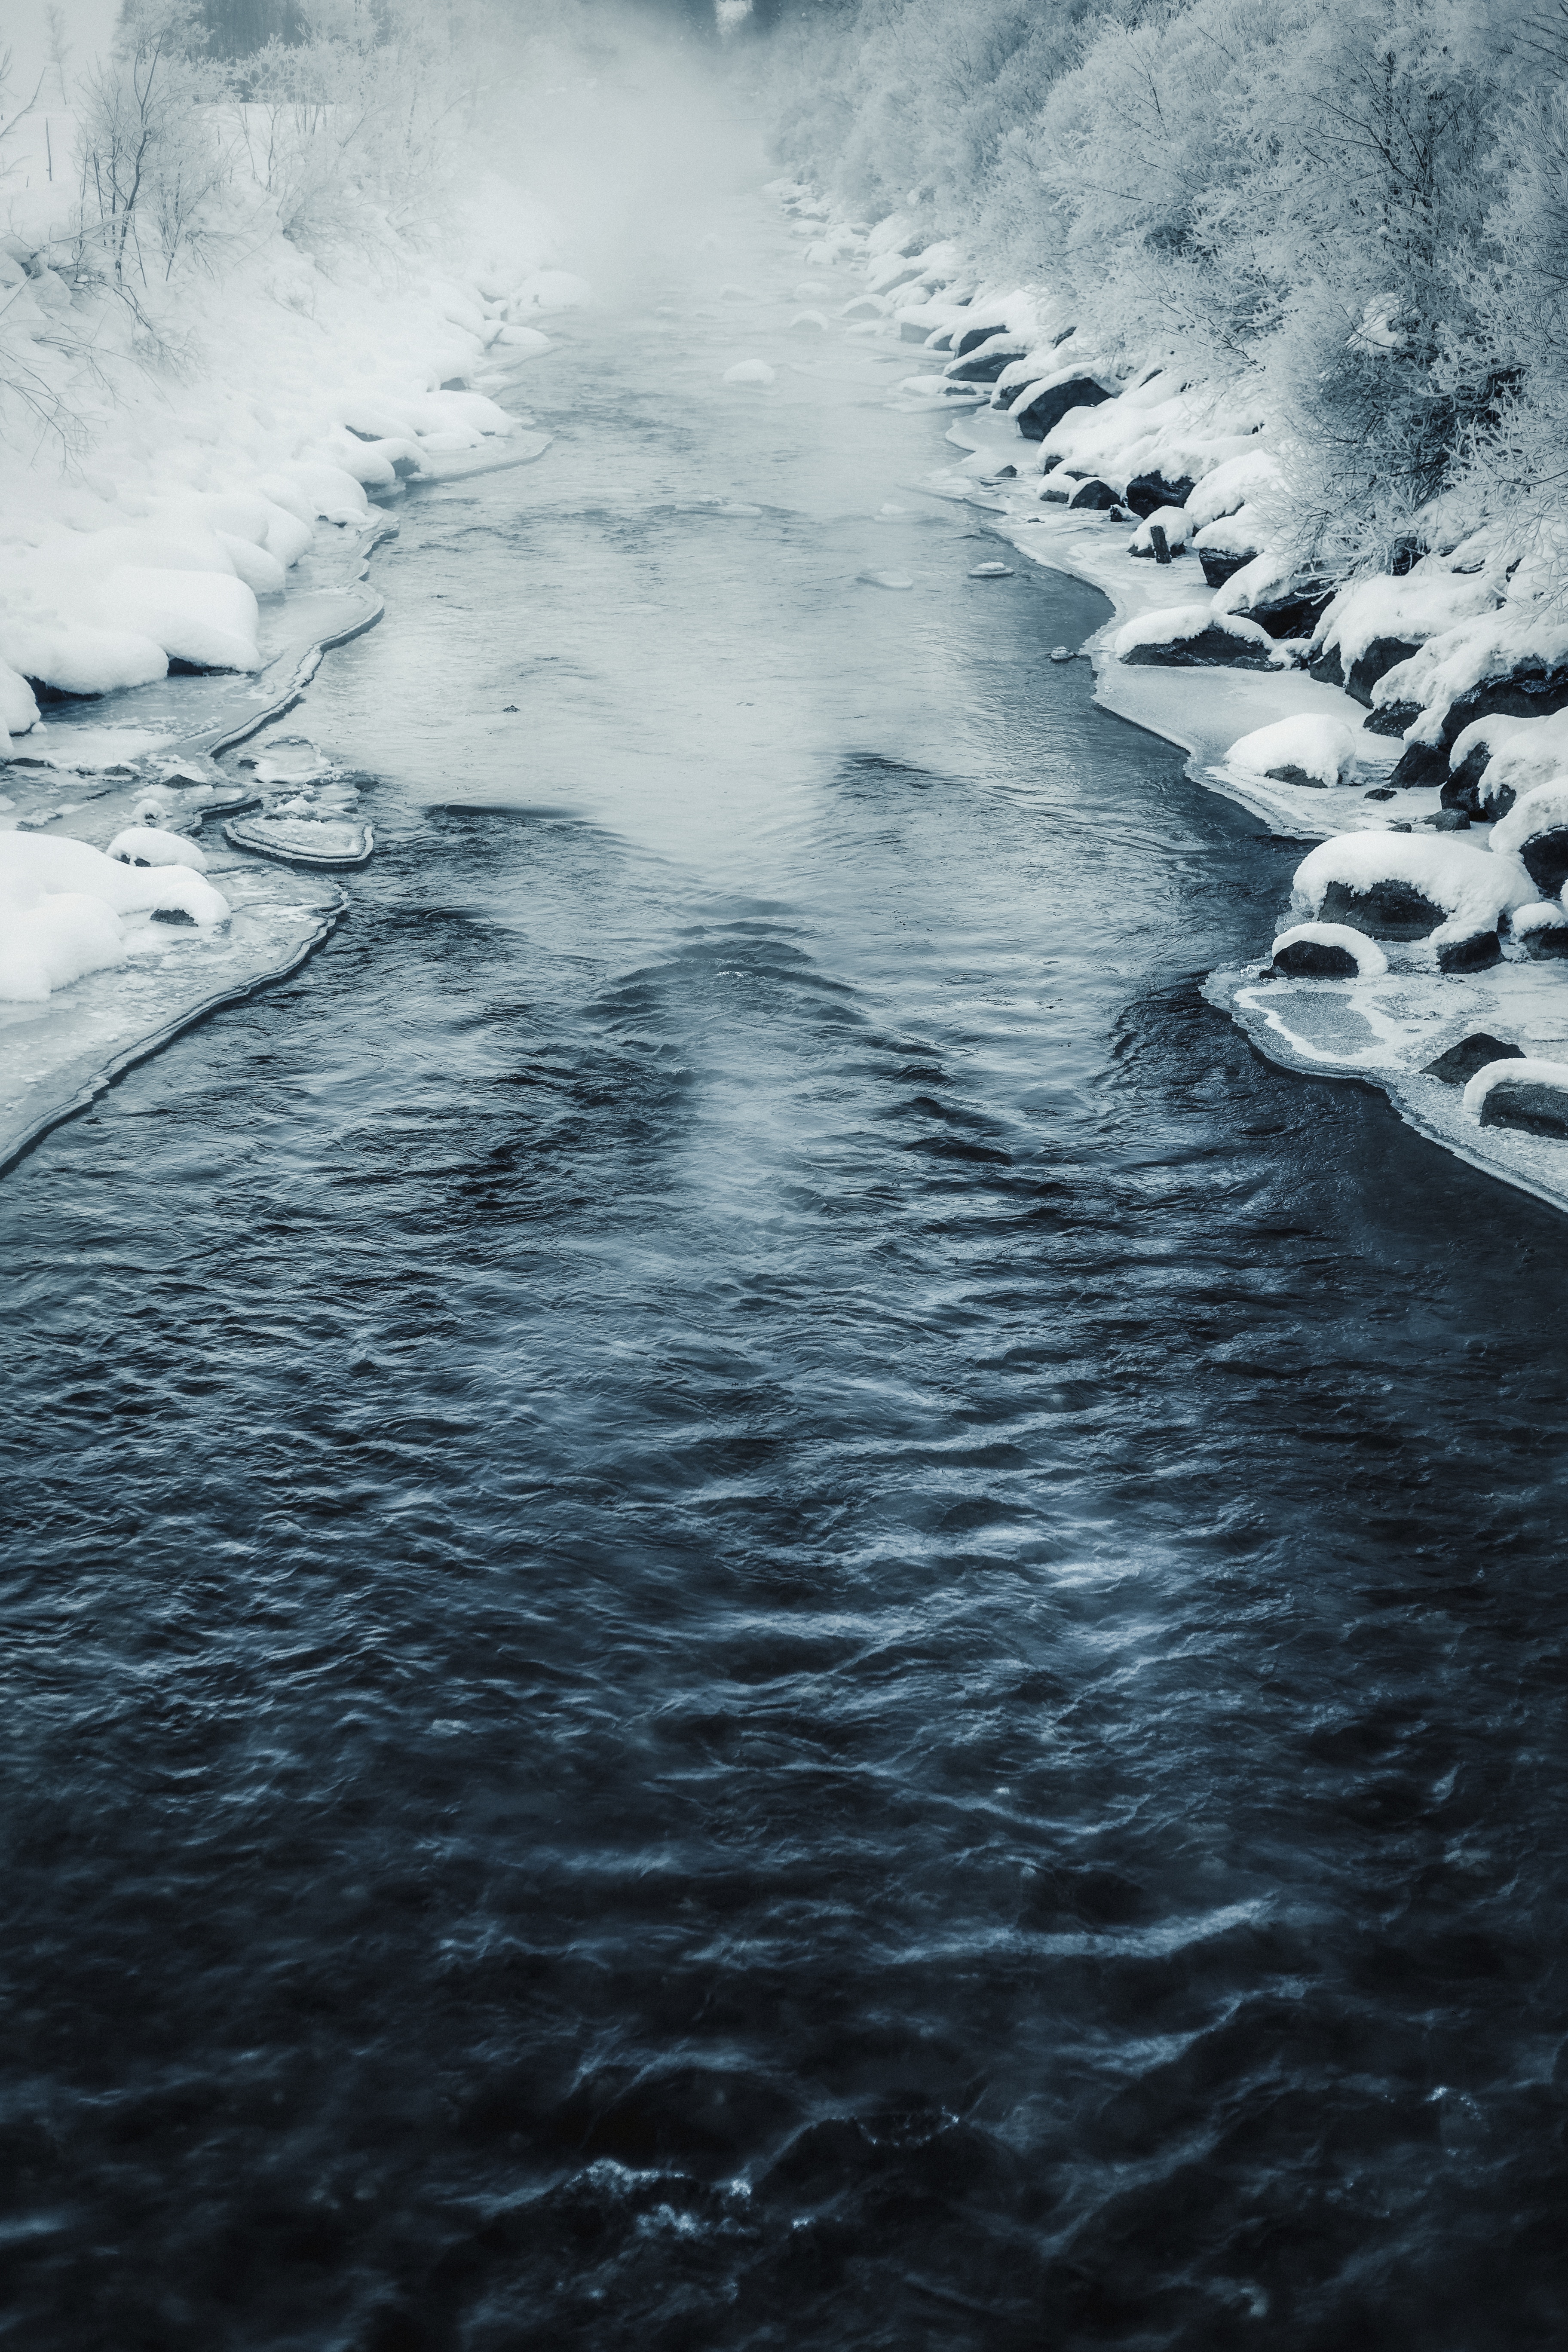 Лед на речке мы лежим лед на речке мы бежим: Разгадай загадку льётся речка мы лежим лёд на речке мы бежим